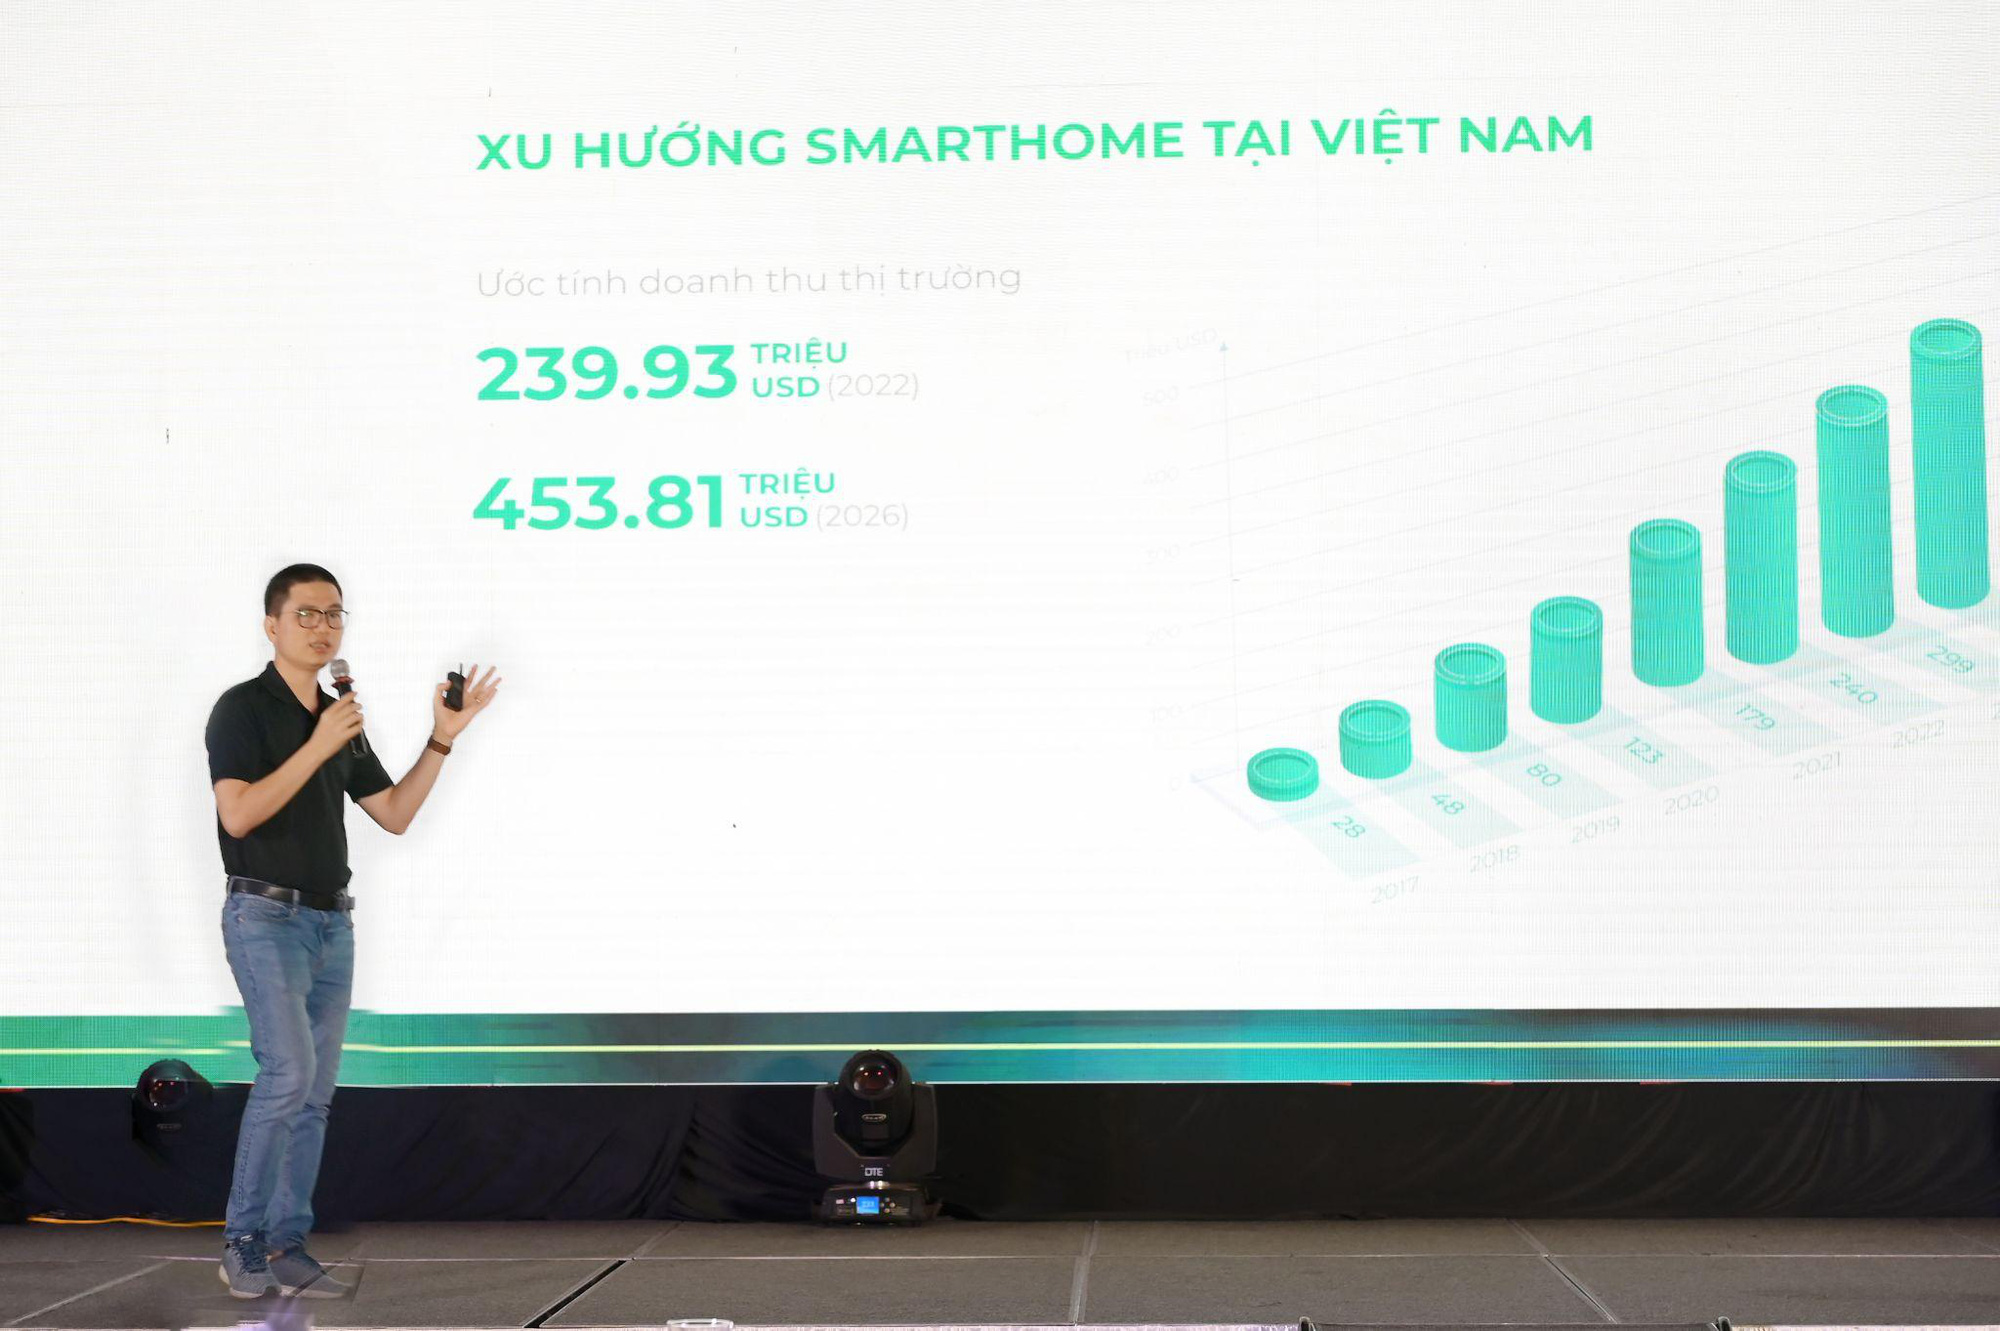 Không lạ khi Lumi là một trong các thương hiệu hàng đầu trong ngành Smarthome Việt - Ảnh 4.